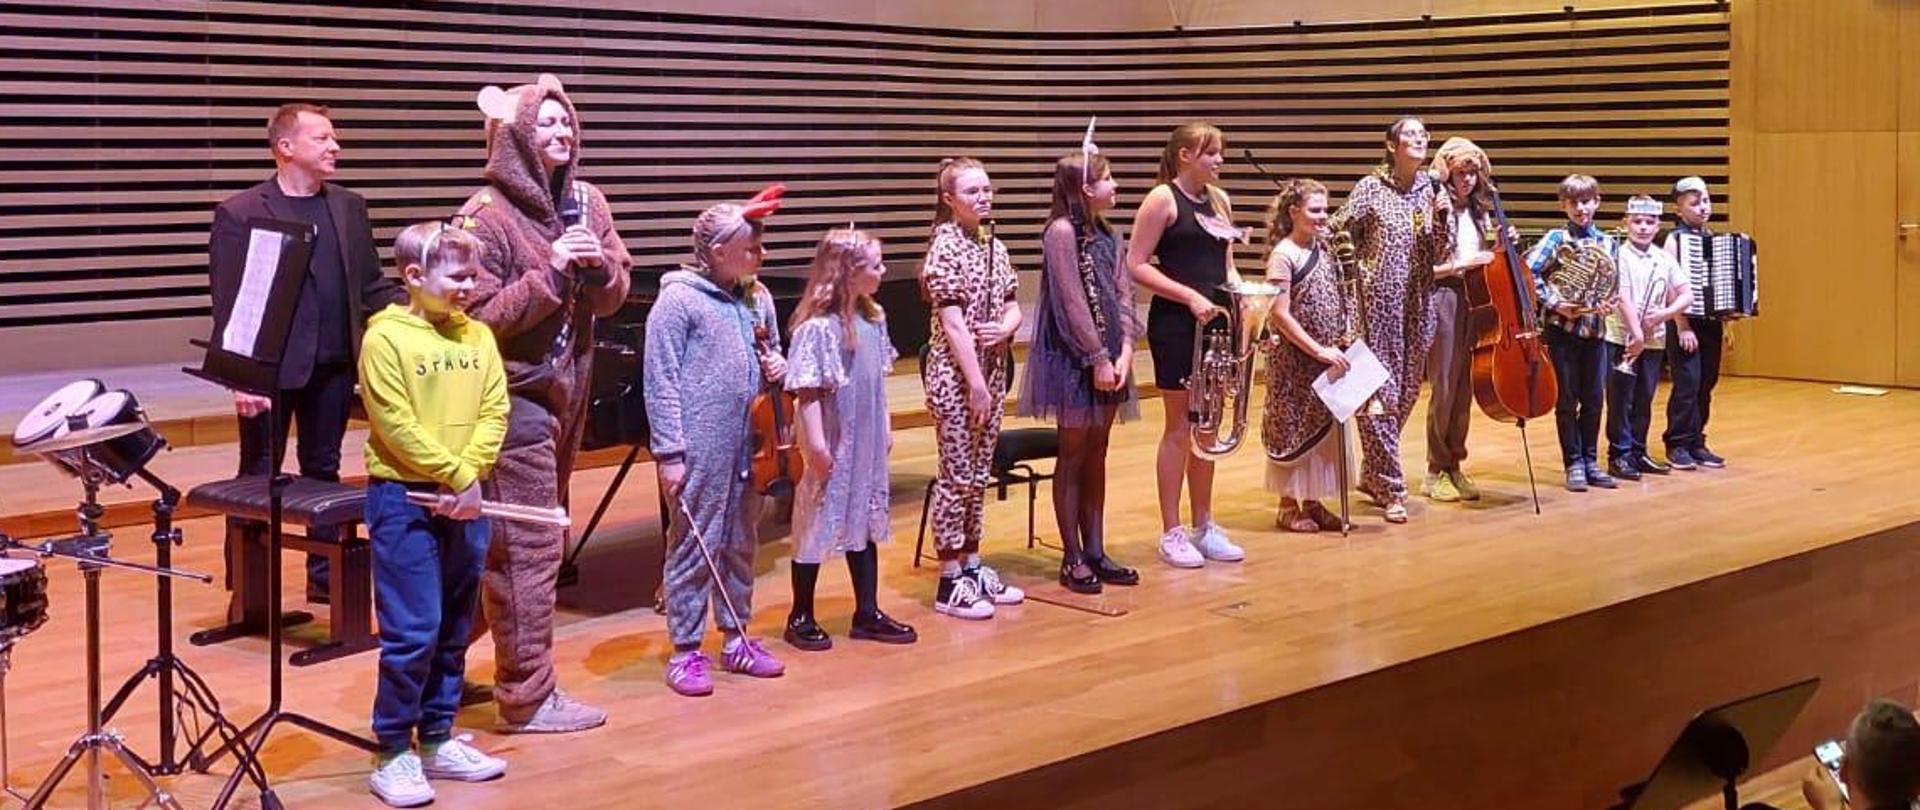 Wszyscy wykonawcy - jedenaścioro dzieci z instrumentami i dwie kobiety w przebraniach różnych zwierzątek oraz mężczyzna stoją w rzędzie na estradzie sali koncertowej.